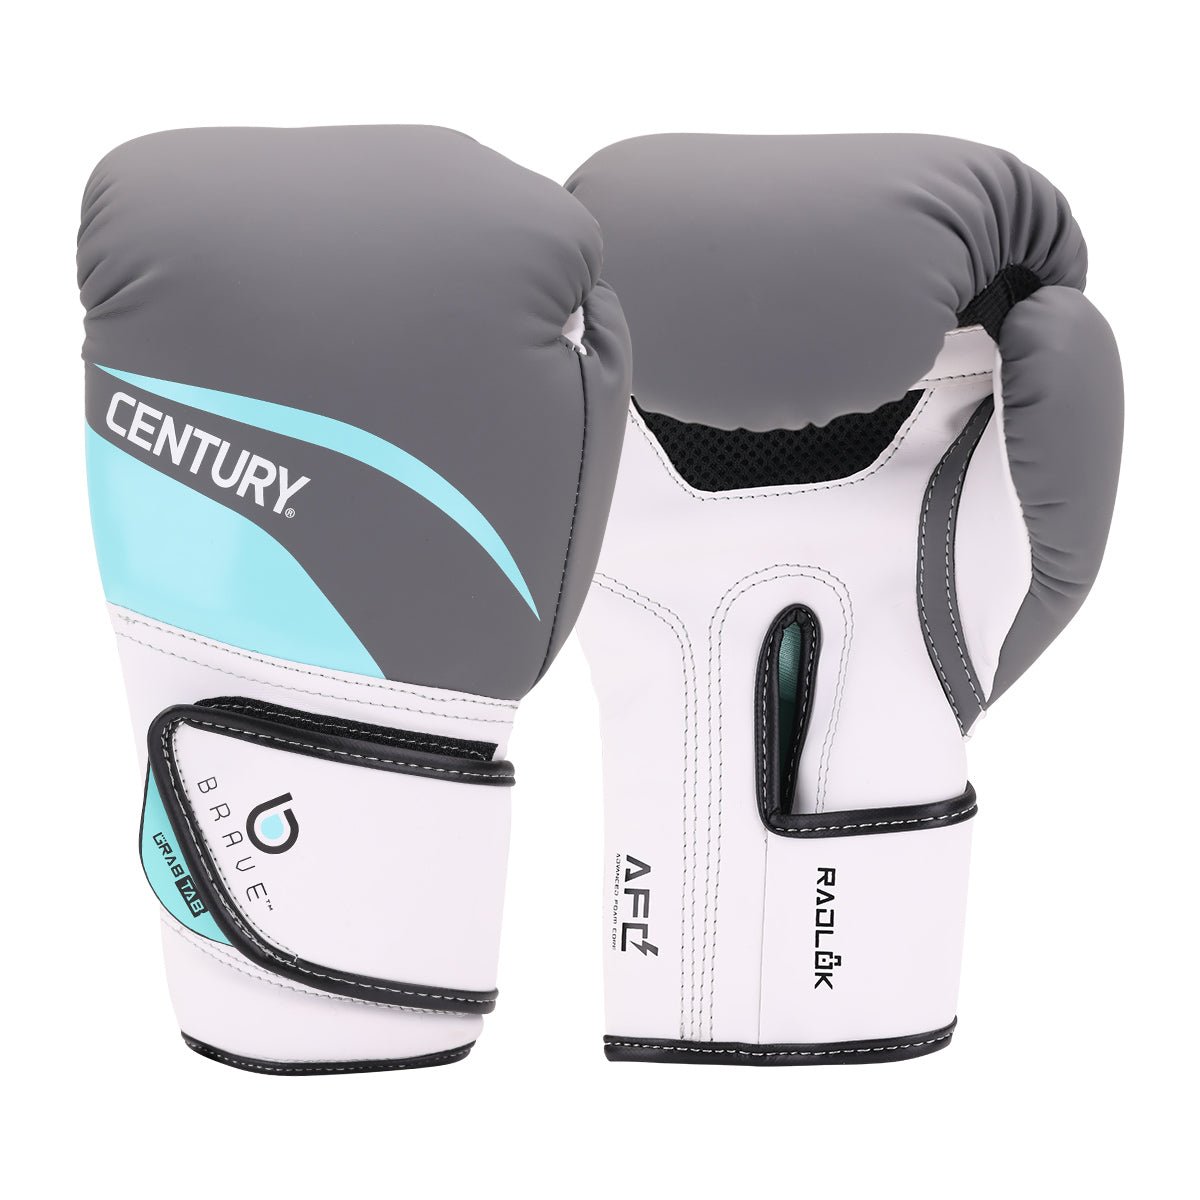 Brave Women's Boxing Gloves - White/Teal 10 Oz. White/Teal